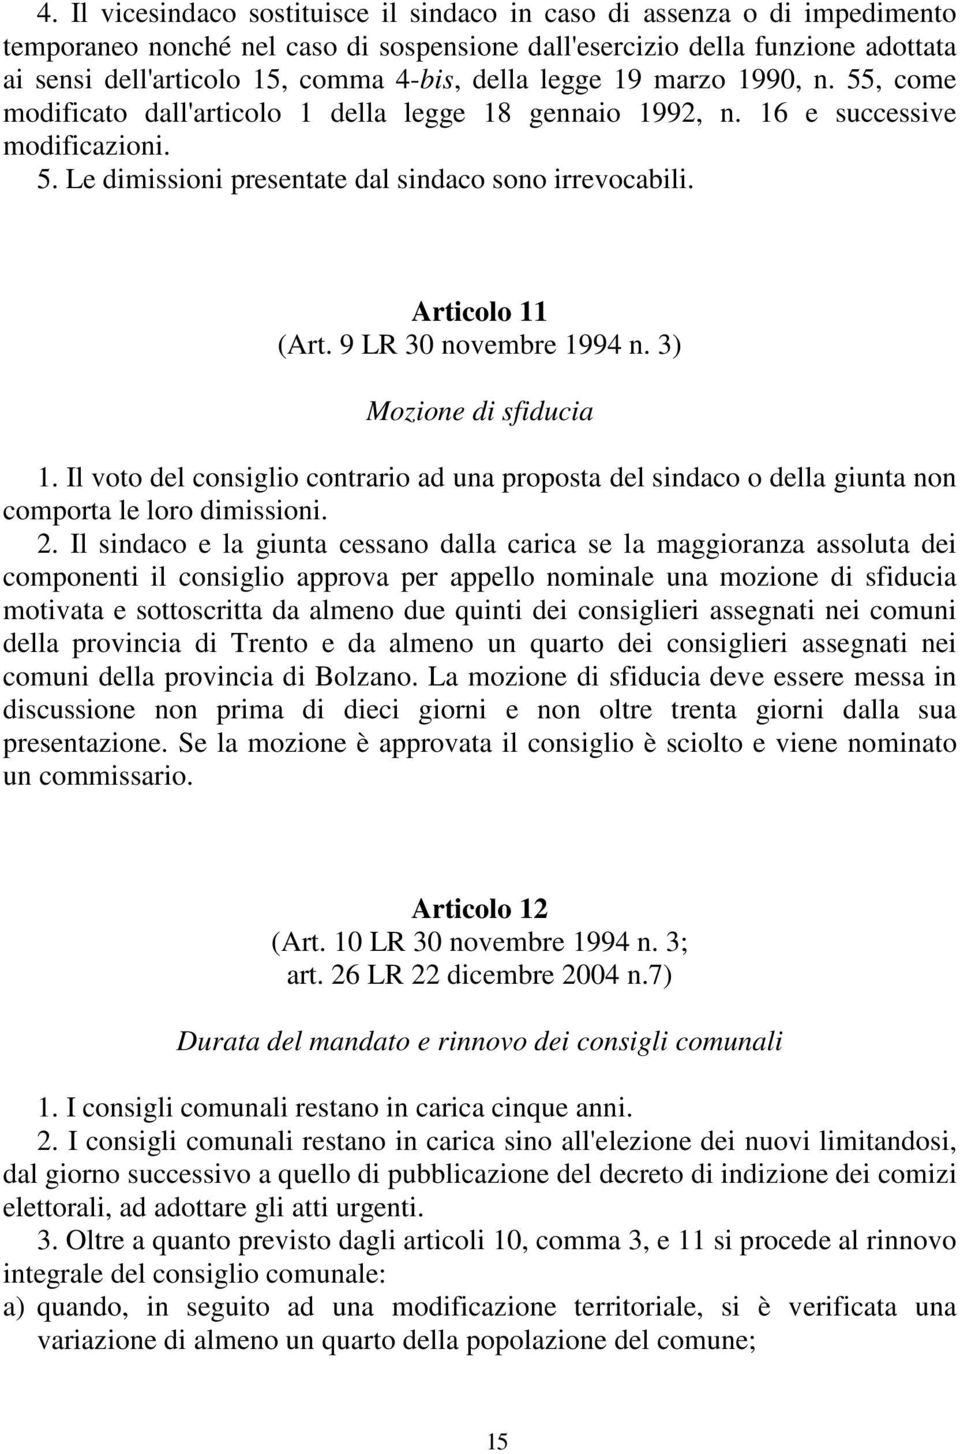 Articolo 11 (Art. 9 LR 30 novembre 1994 n. 3) Mozione di sfiducia 1. Il voto del consiglio contrario ad una proposta del sindaco o della giunta non comporta le loro dimissioni. 2.